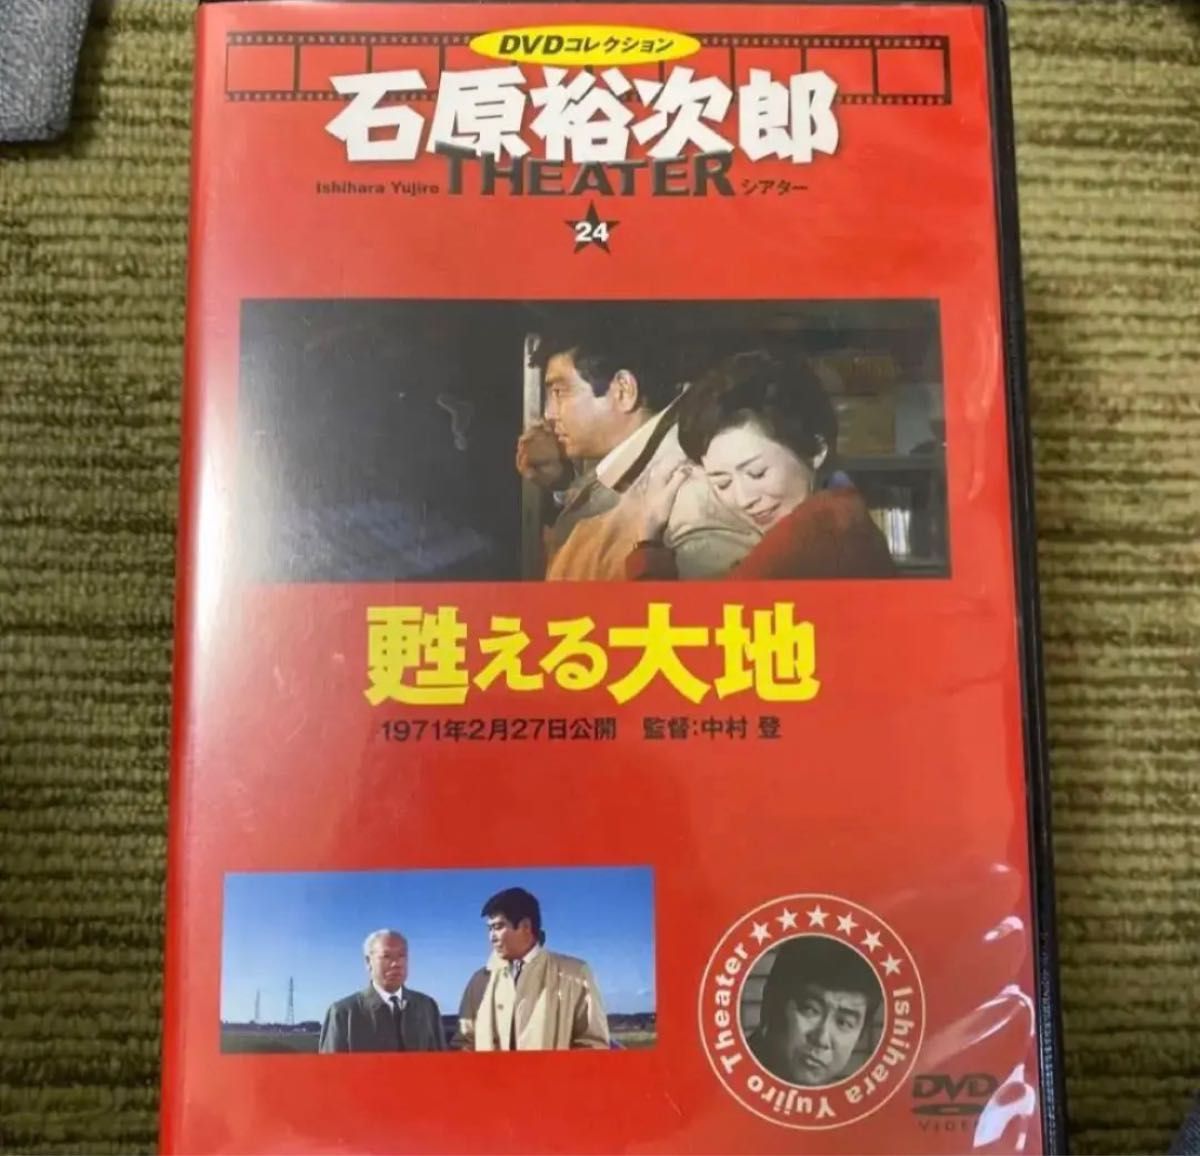 石原裕次郎シアター DVDコレクション 4本セット